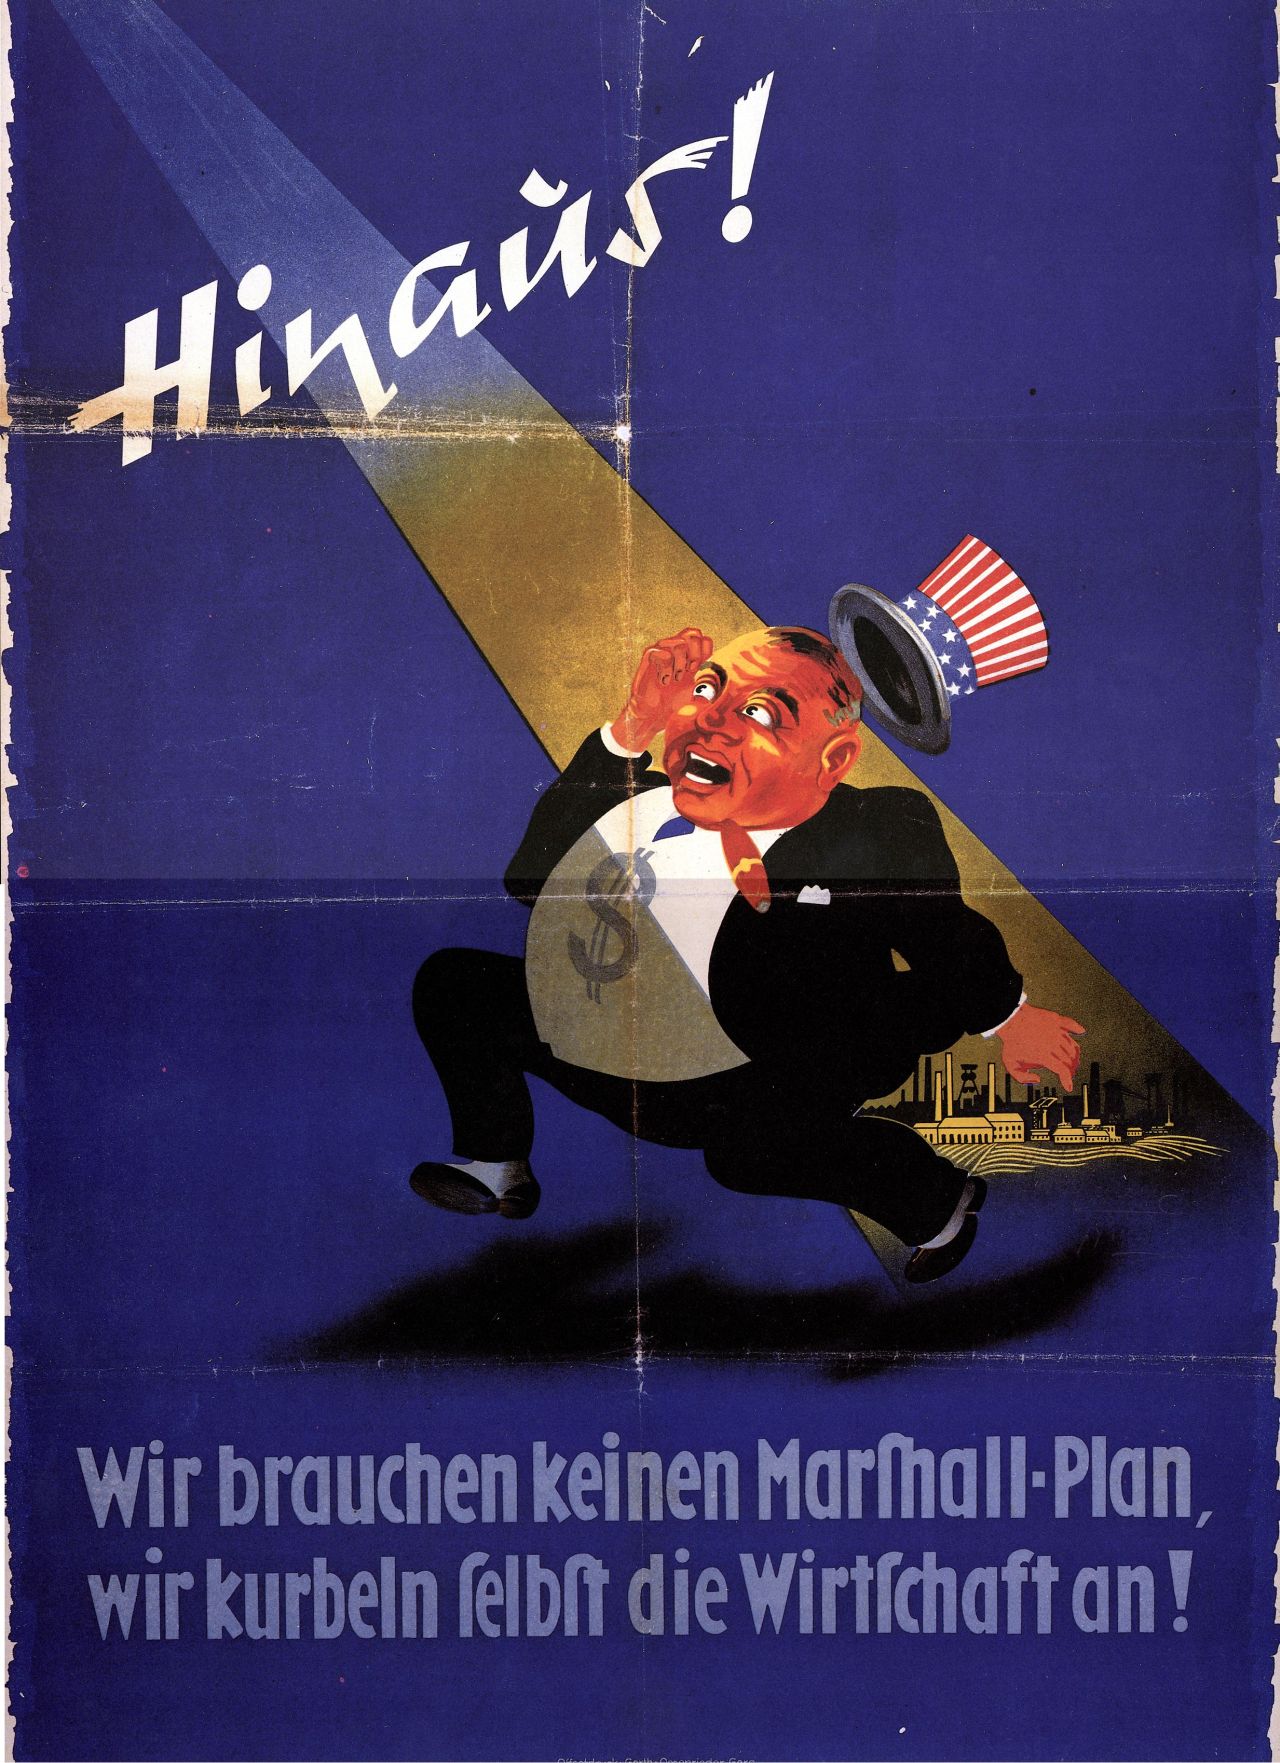 Blaues Plakat, dicker Mann mit USA-Hut und Dollarzeichen auf dem Bauch im Scheinwerferlicht. Oben große Beschriftung: Hinaus! Darunter: Wir brauchen keinen Marshall-Plan, wir kurben selbst die Wirtschaft an!